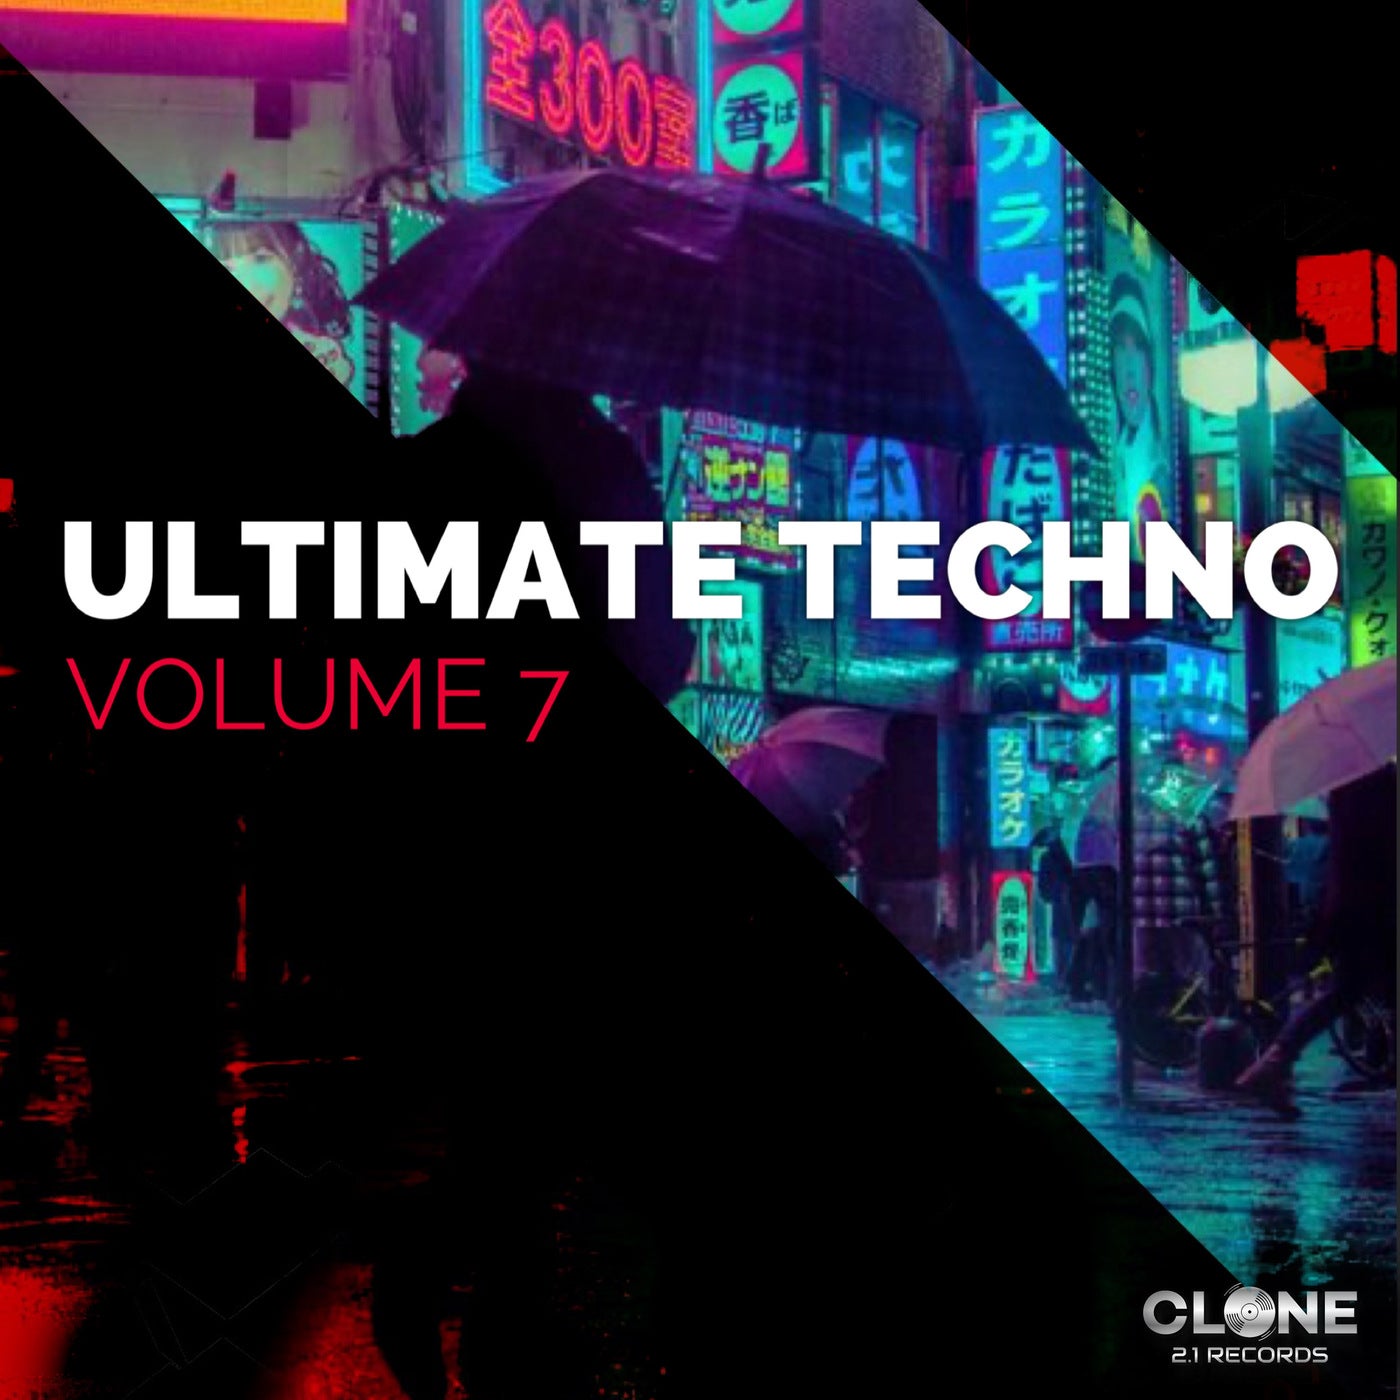 Ultimate Techno, Vol.7